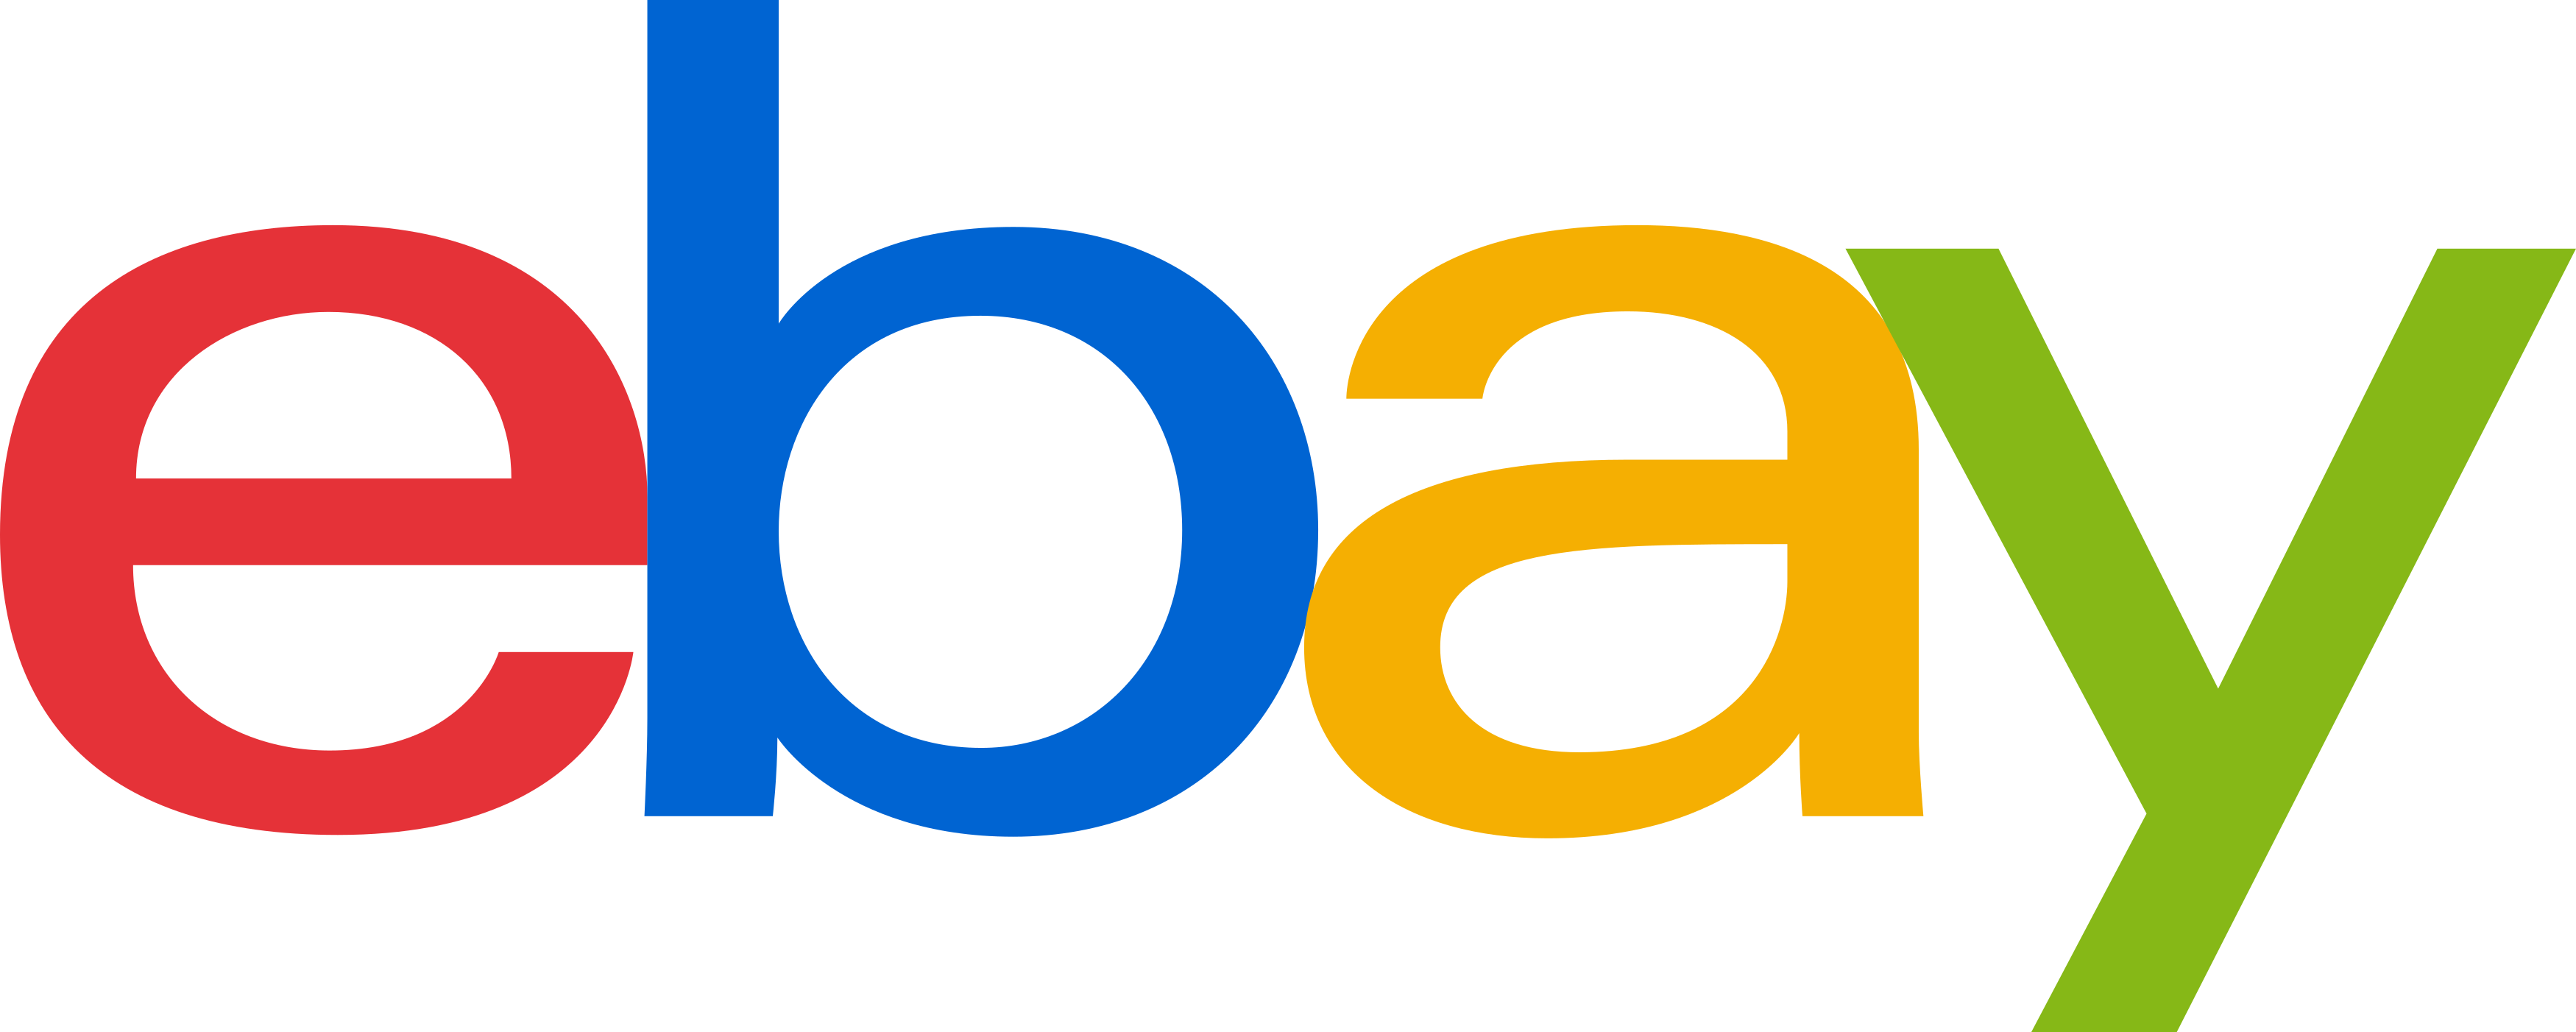 ebay logo 1 - eBay Logo